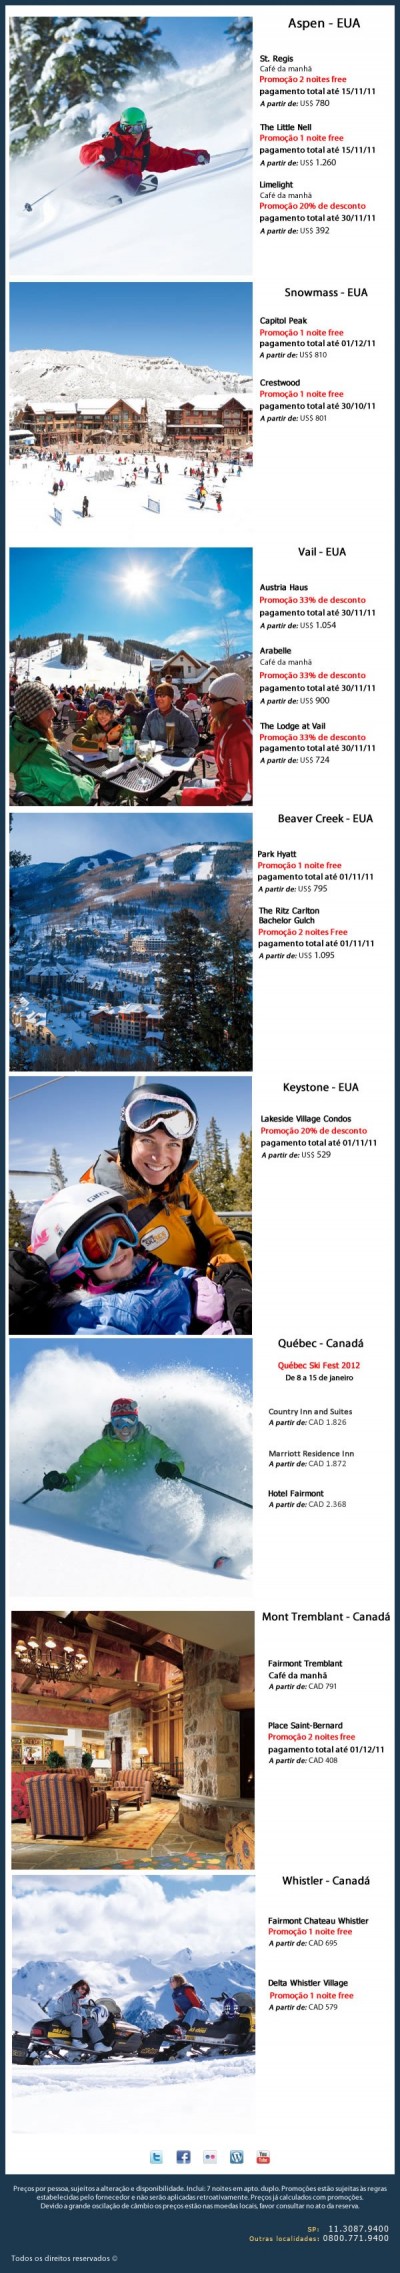 Promoções Ski & Snowboard América do Norte